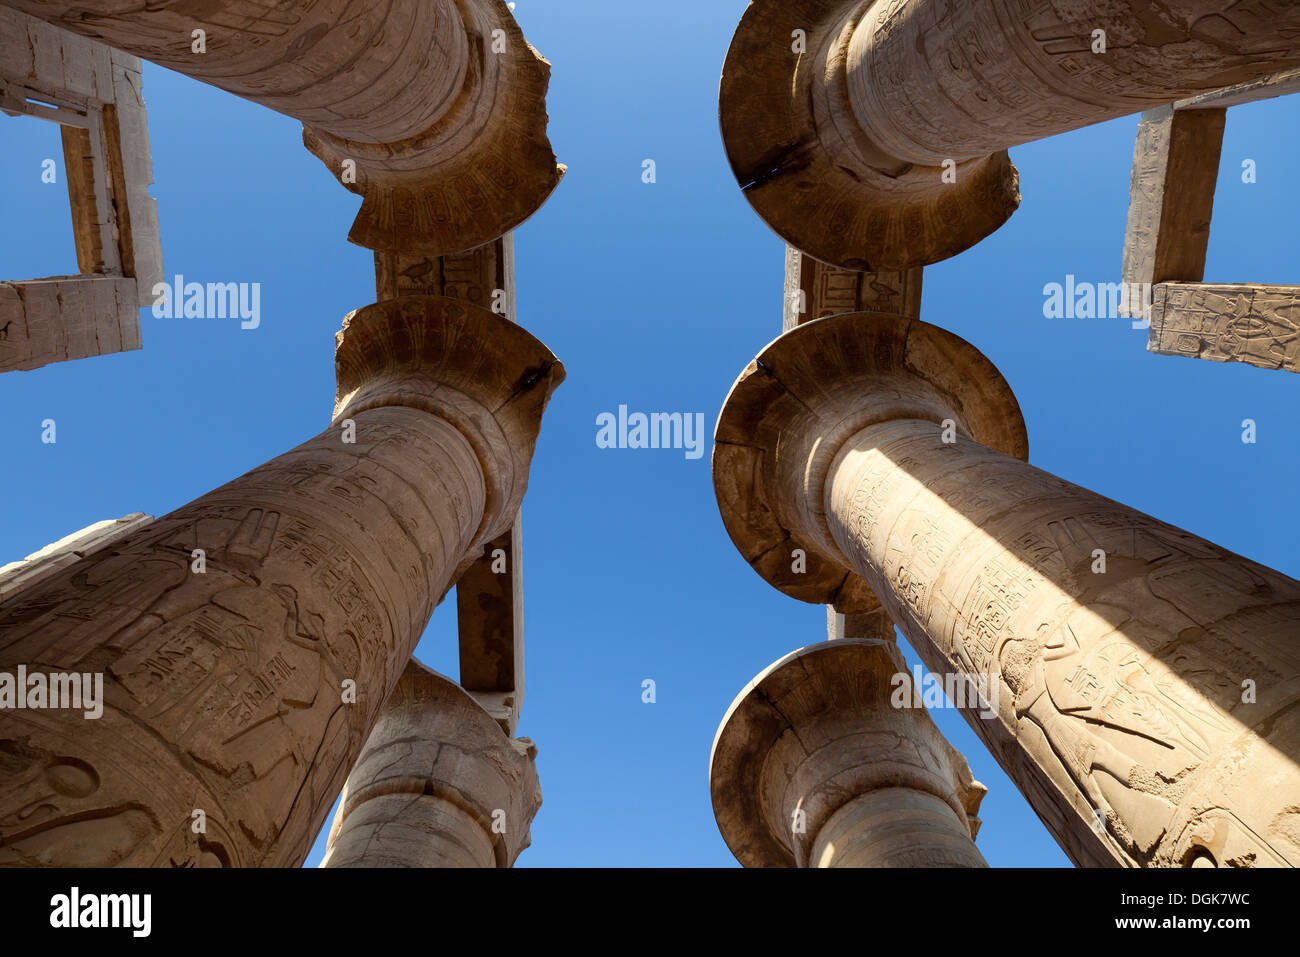 Looking upwards at the pillars at Karnak. Stock Photo